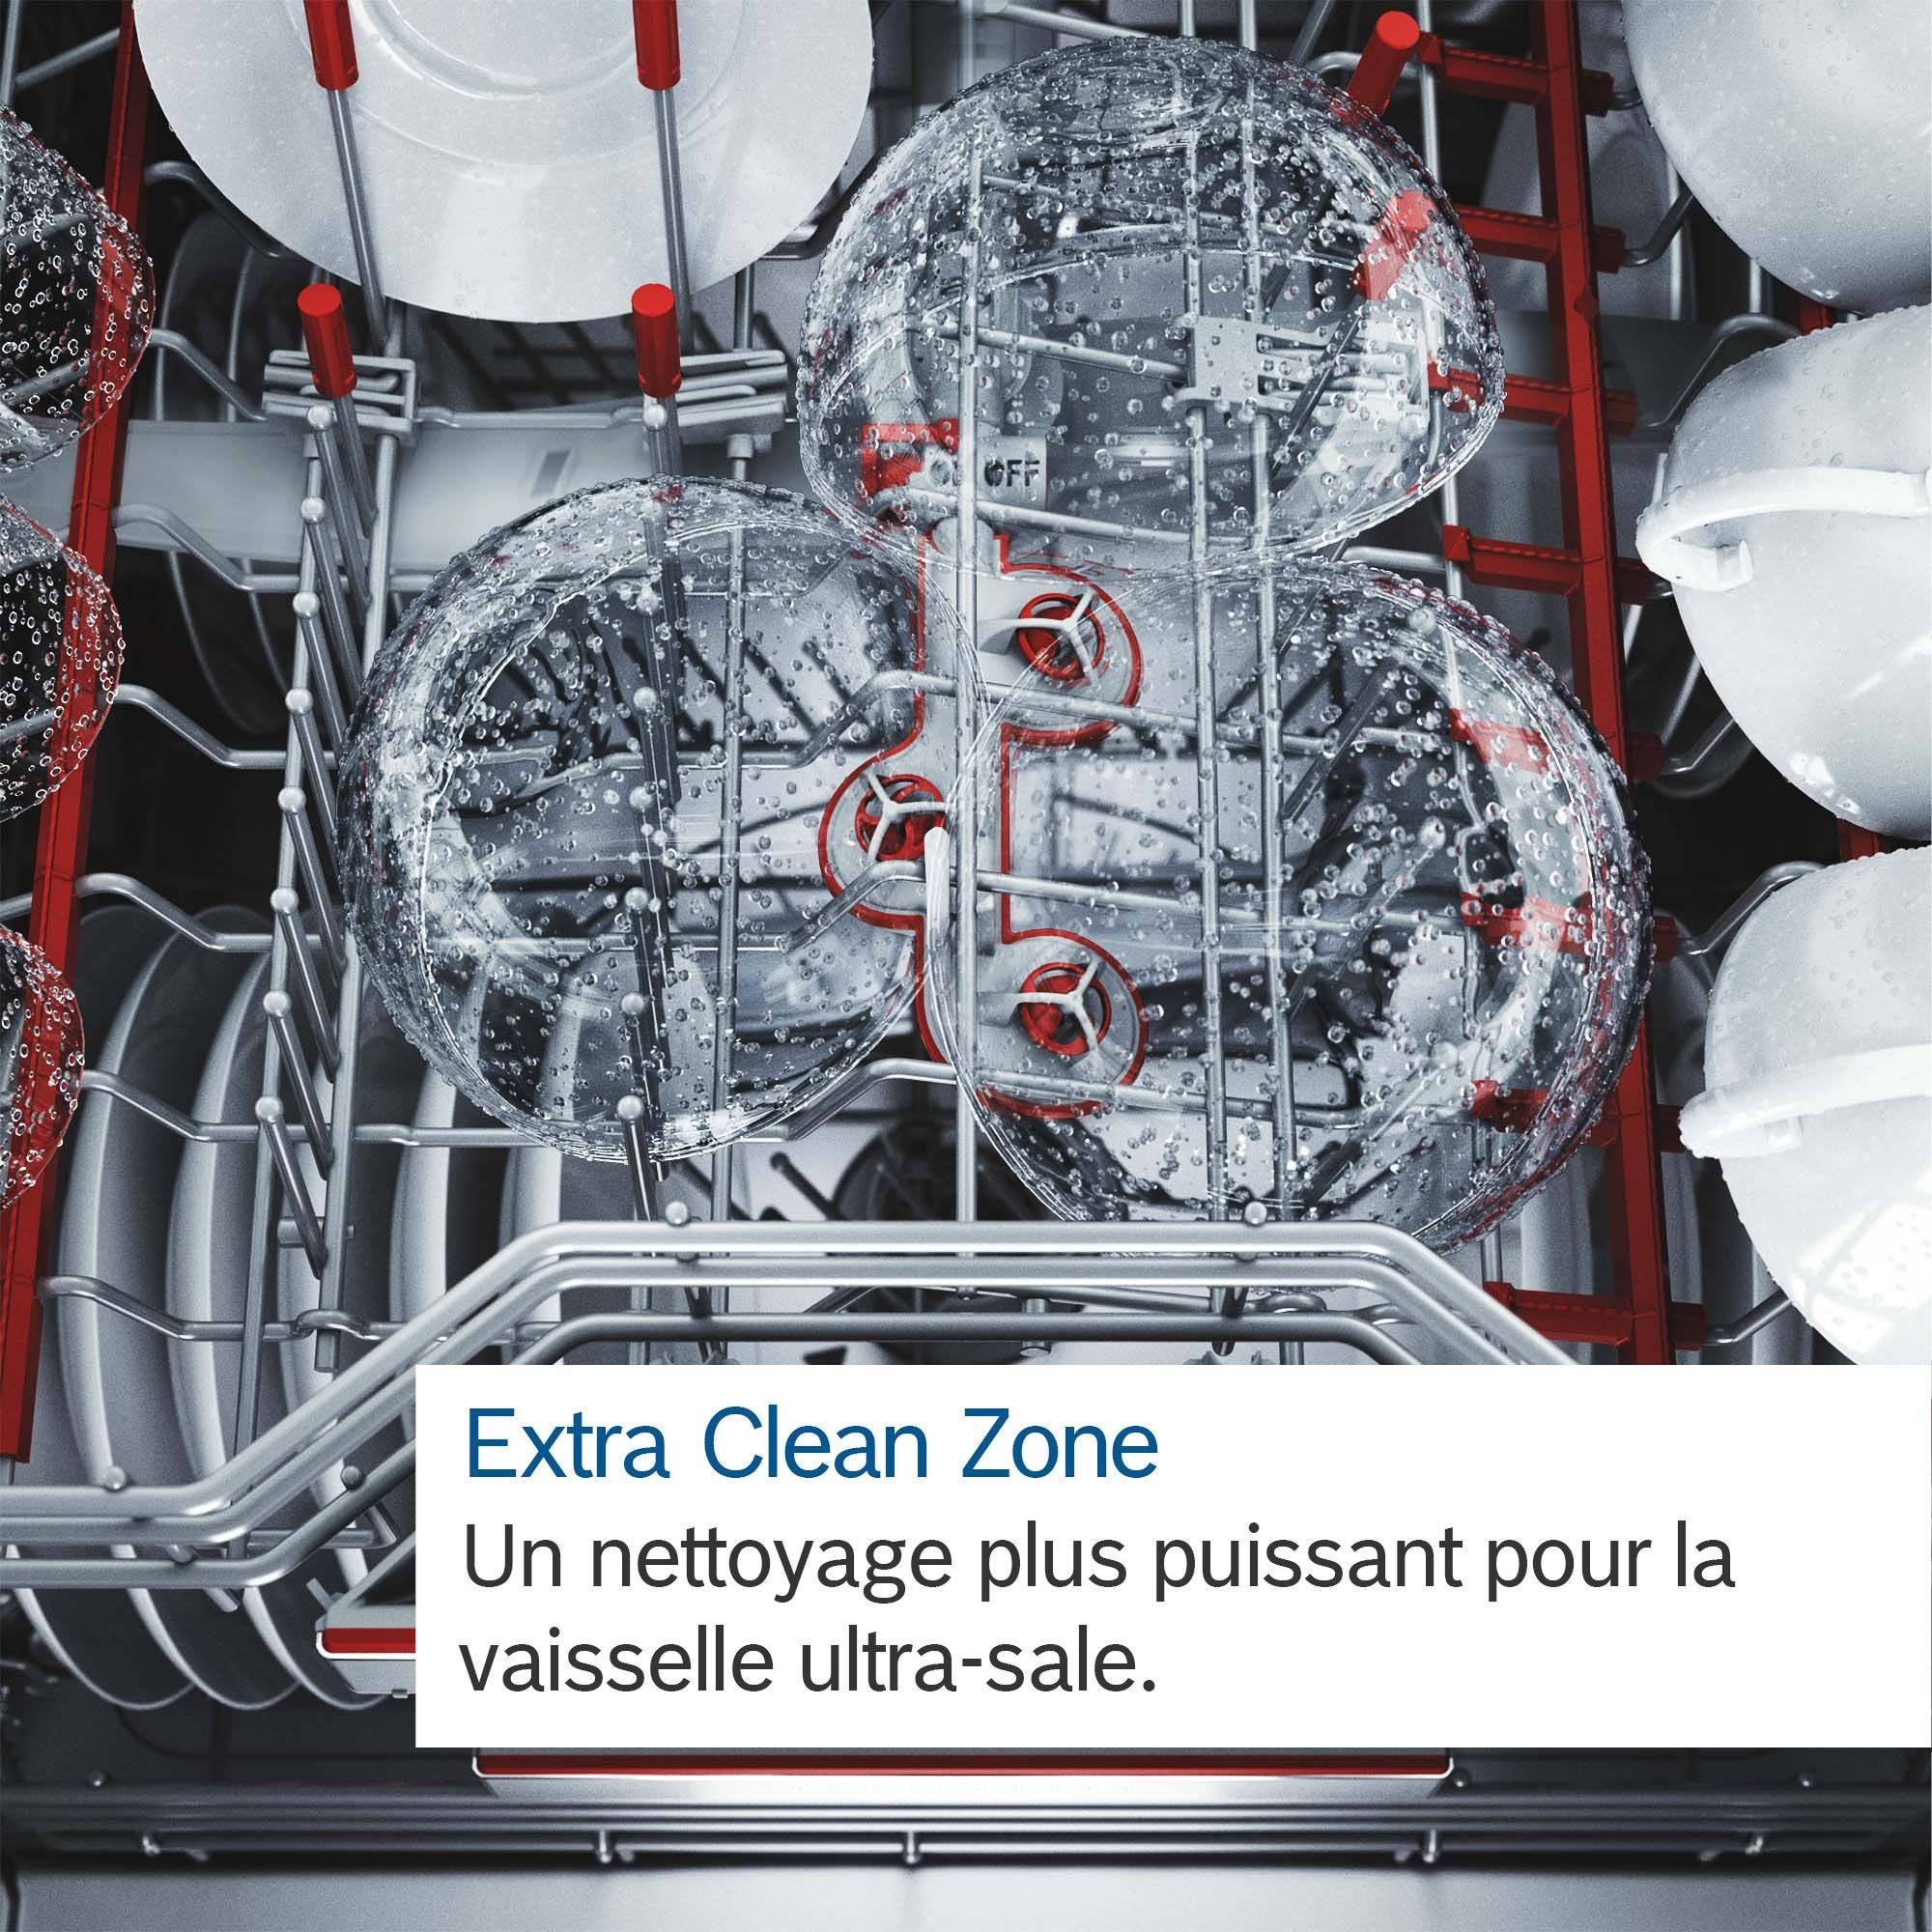 BOSCH Lave vaisselle tout integrable 60 cm  - SMV6ZCX06E